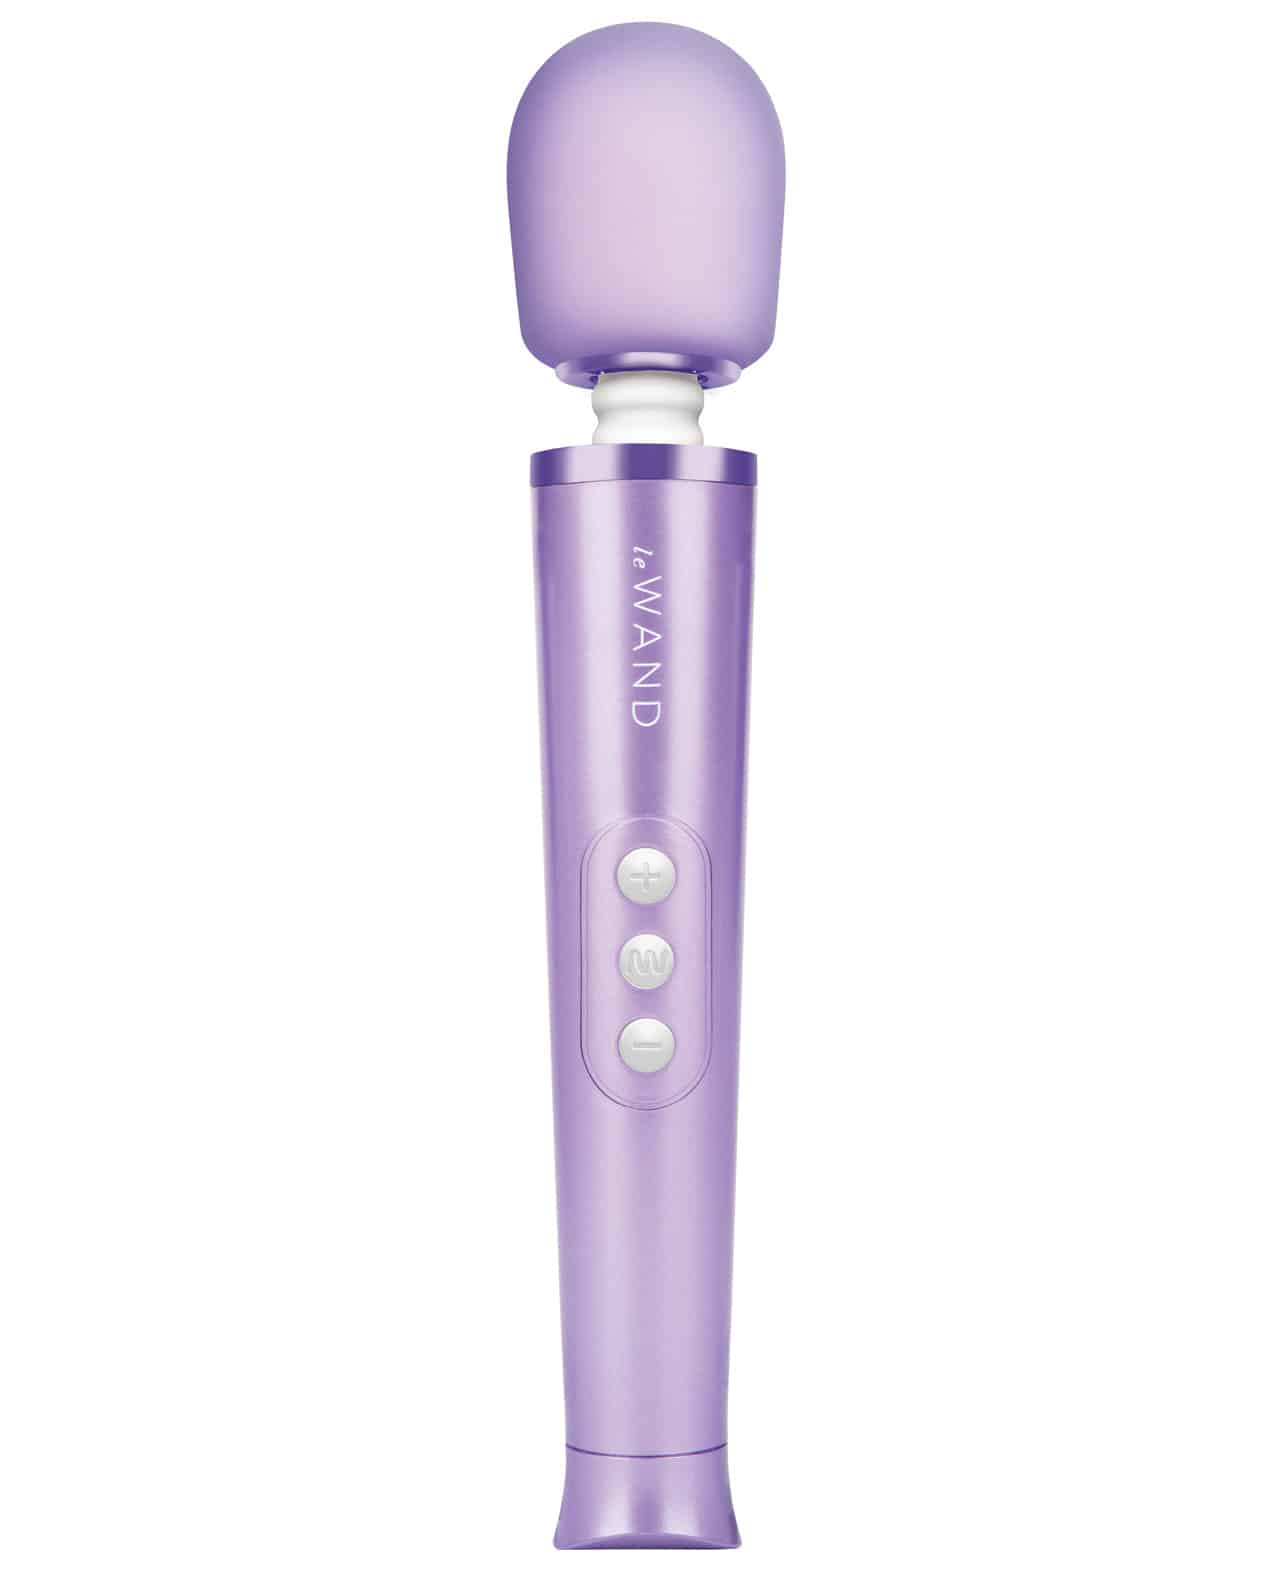 Le Wand Petite Rechargeable Massager Violet Vibrator